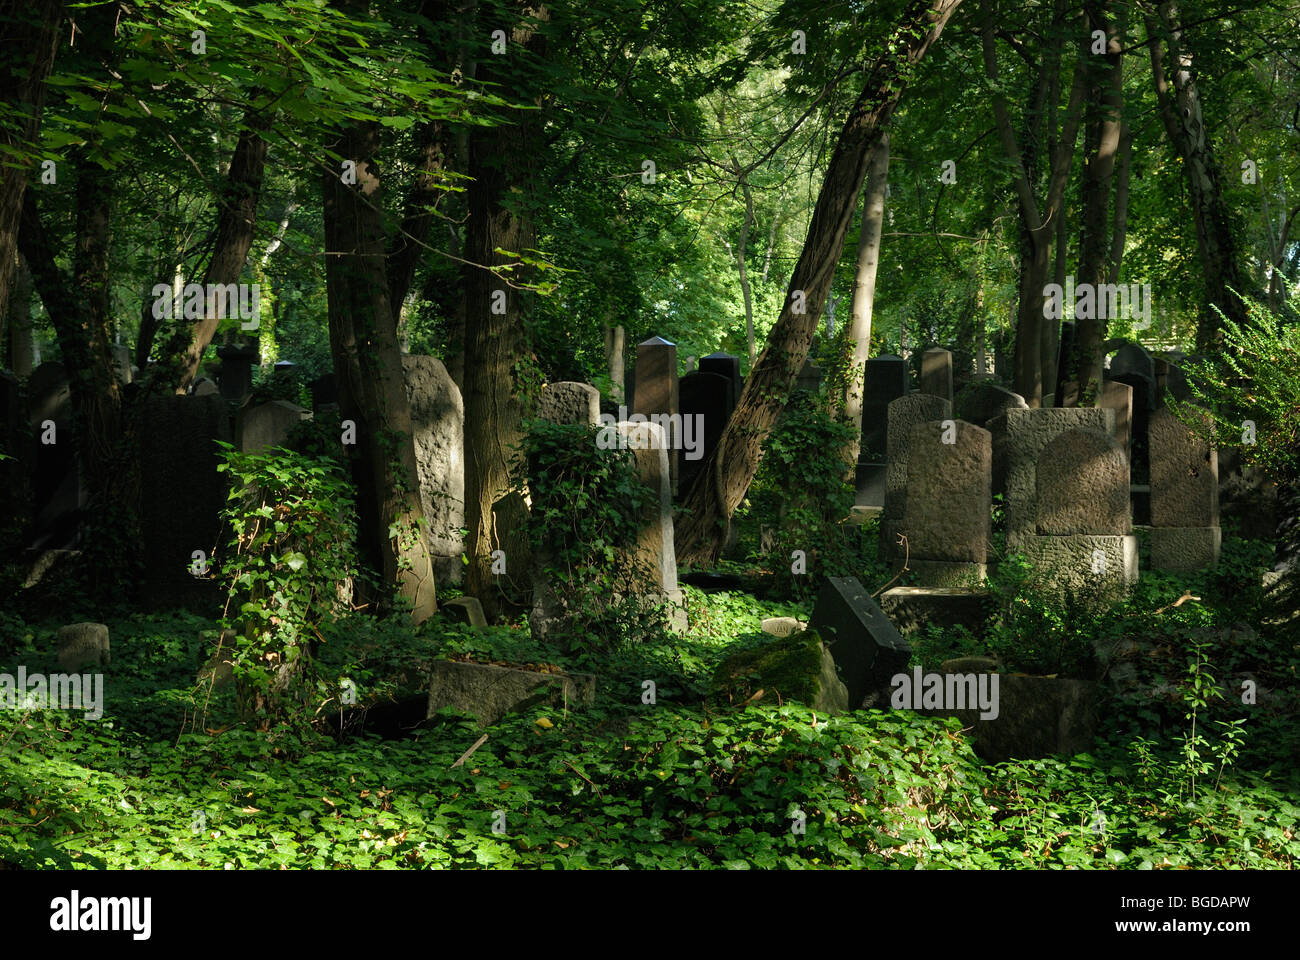 Juedischer Friedhof Weissensee, Jewish Cemetary Weissensee, Berlin, Germany, Europe. Stock Photo